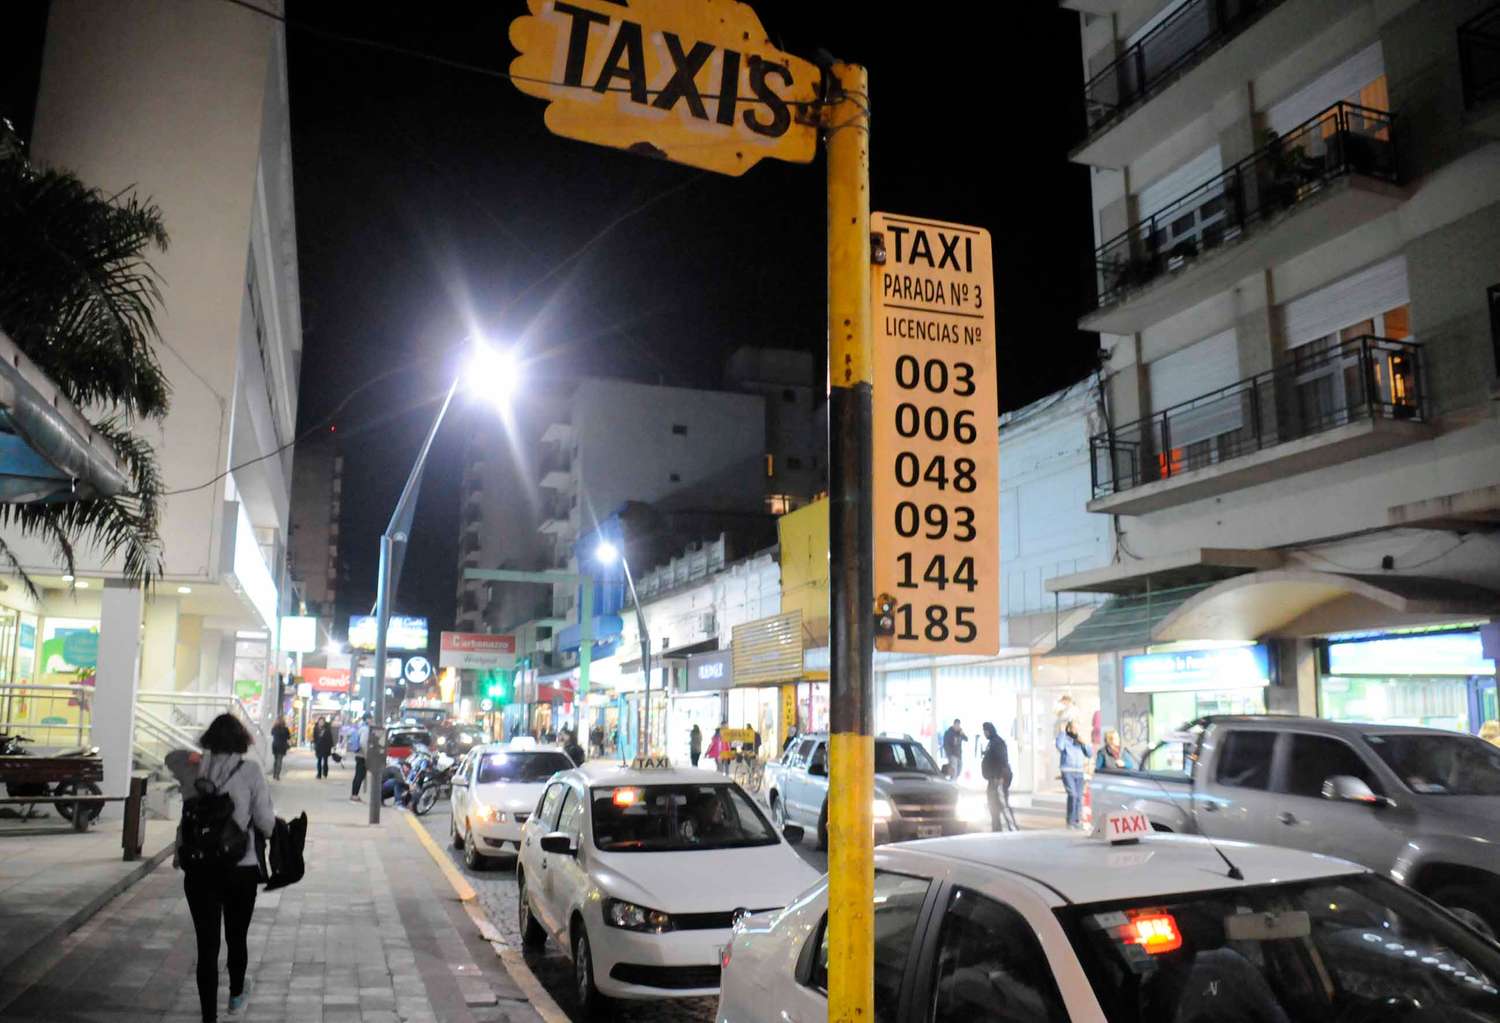 Los taxistas pidieron que la tarifa del servicio aumente a 38 pesos para poder sostenerse